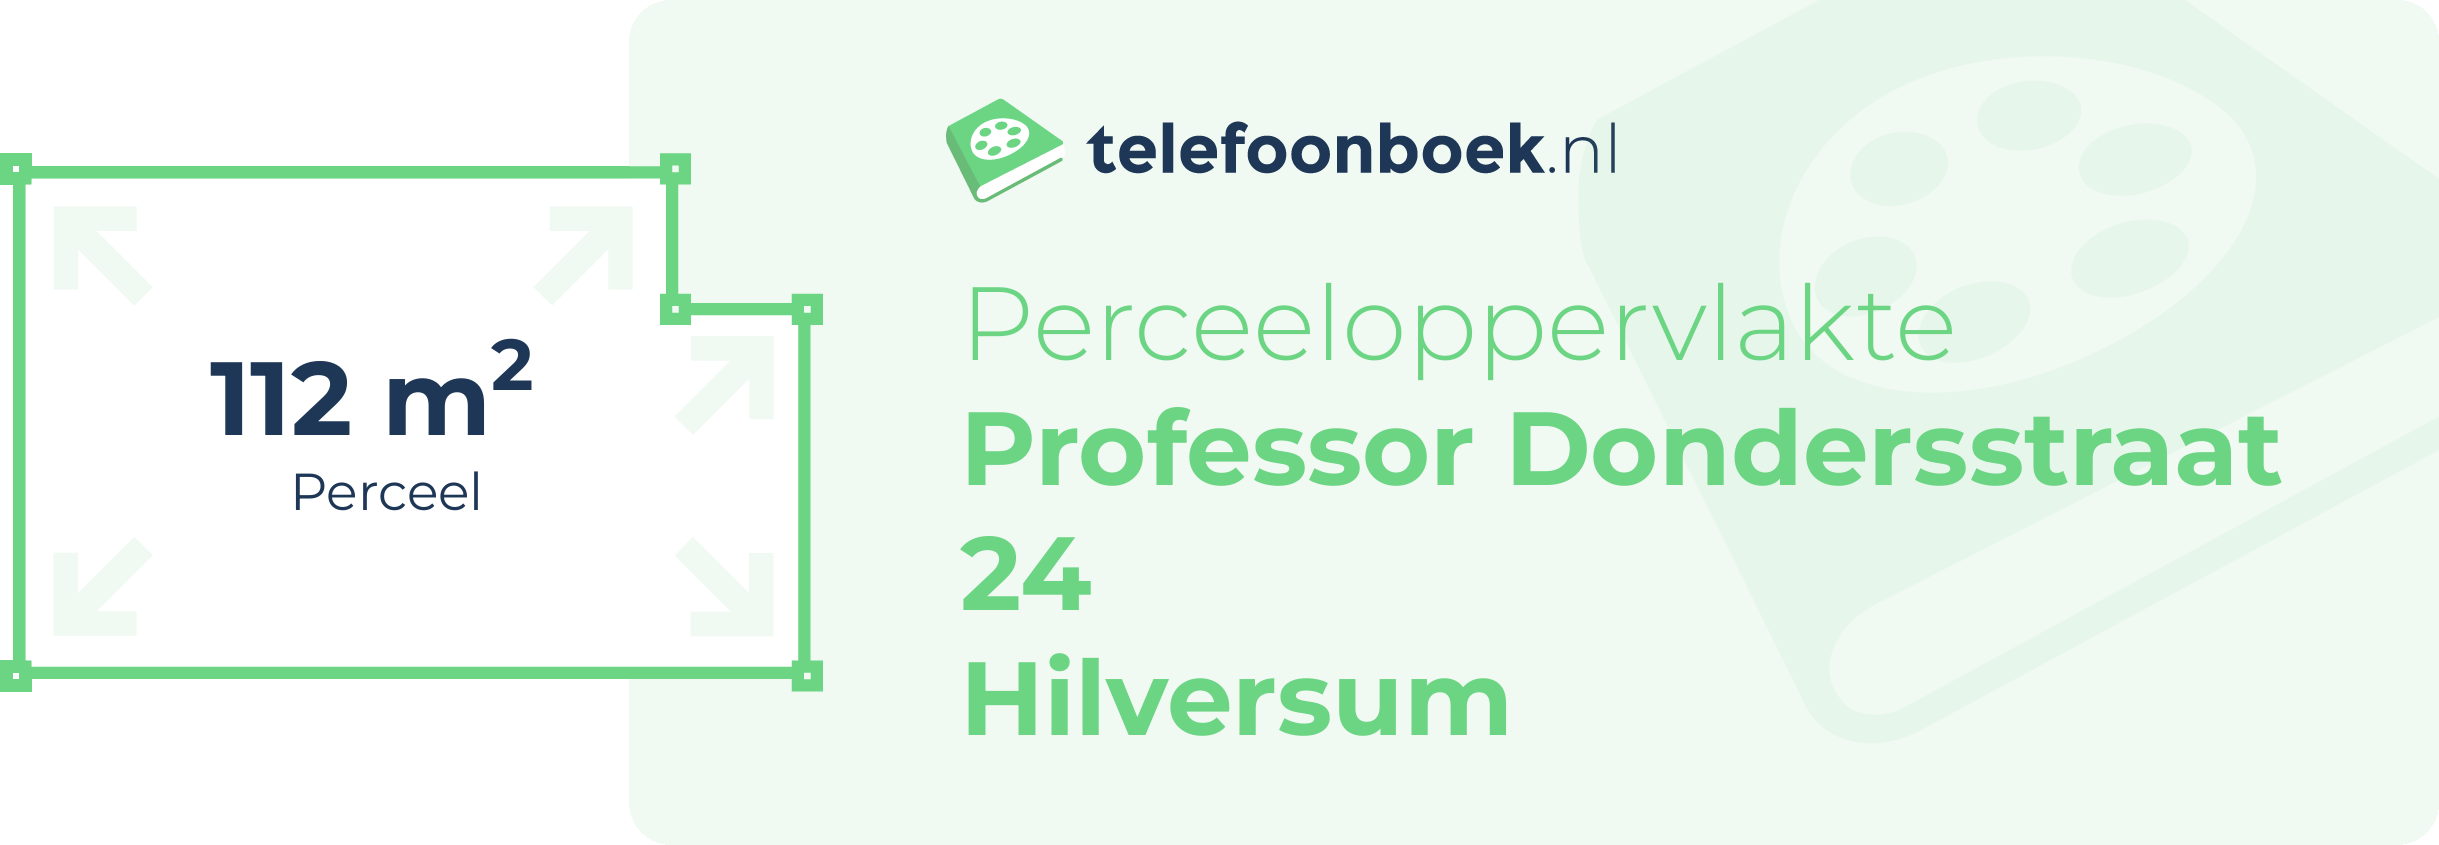 Perceeloppervlakte Professor Dondersstraat 24 Hilversum